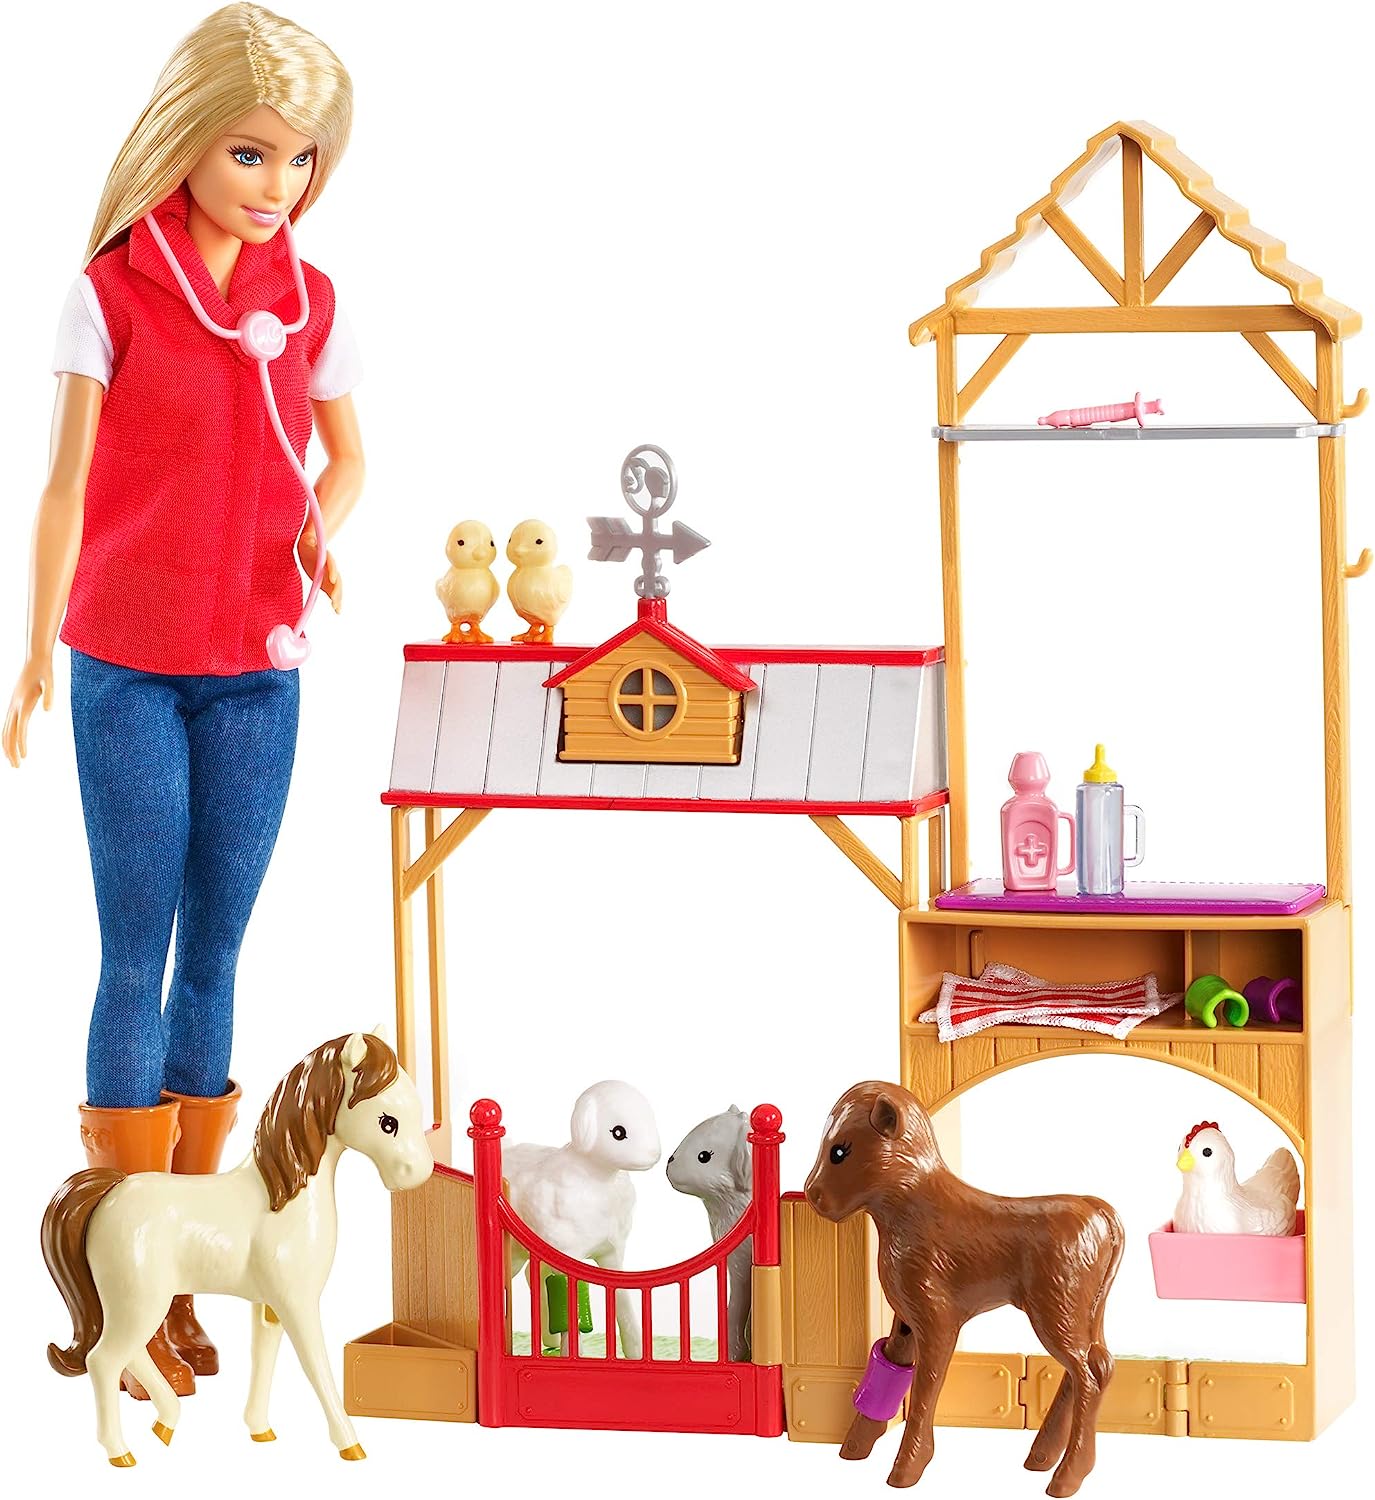 バービー バービー人形 【送料無料】Barbie GCK86 Sweet Orchard Farm Blonde Doll and Playset  with 7 Animalsバービー バービー人形 | angelica